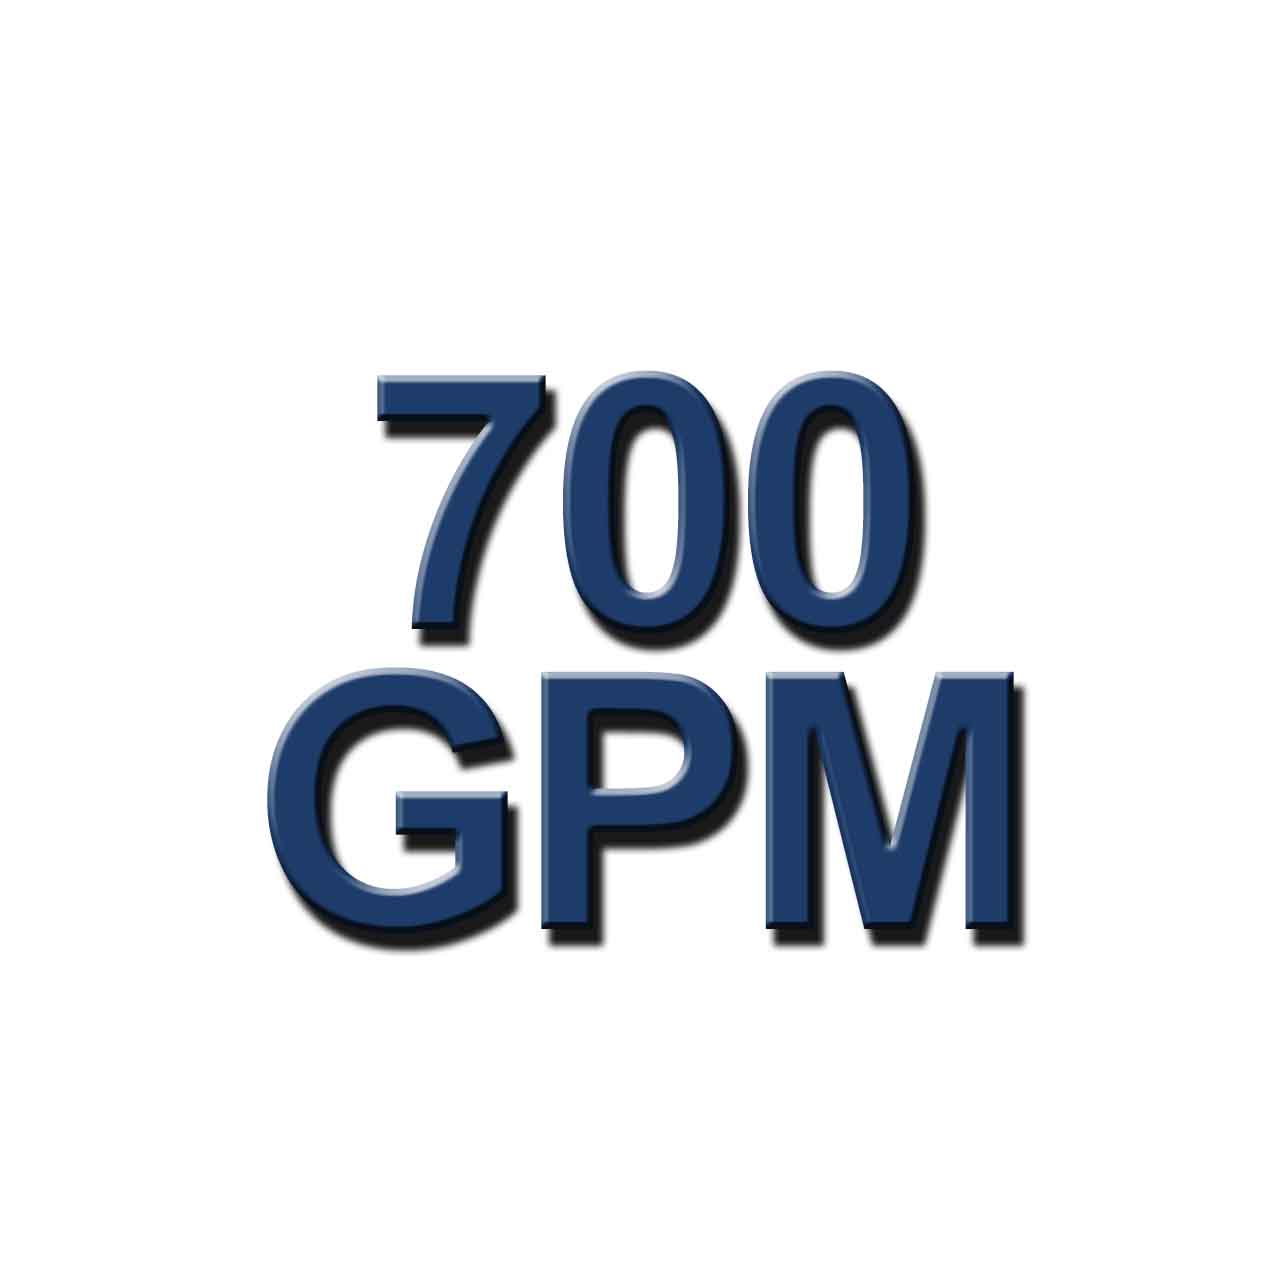 700 GPM